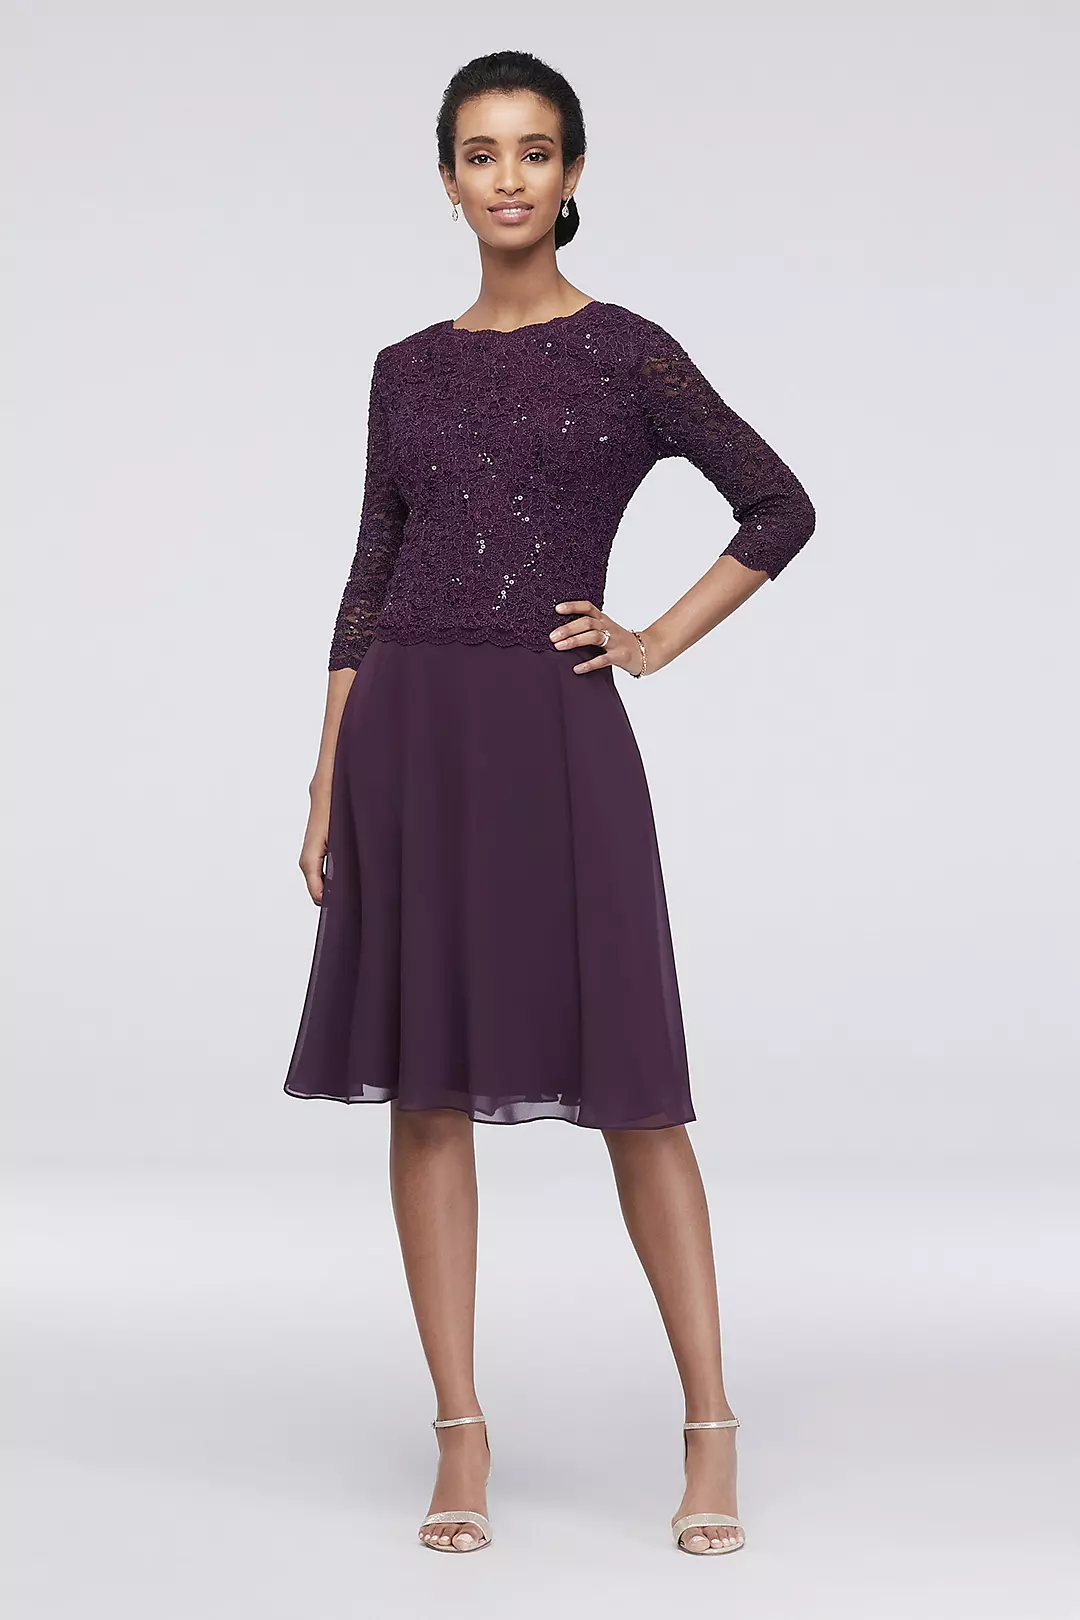 Sequin Lace Scoopneck Short A-Line Petite Dress Image